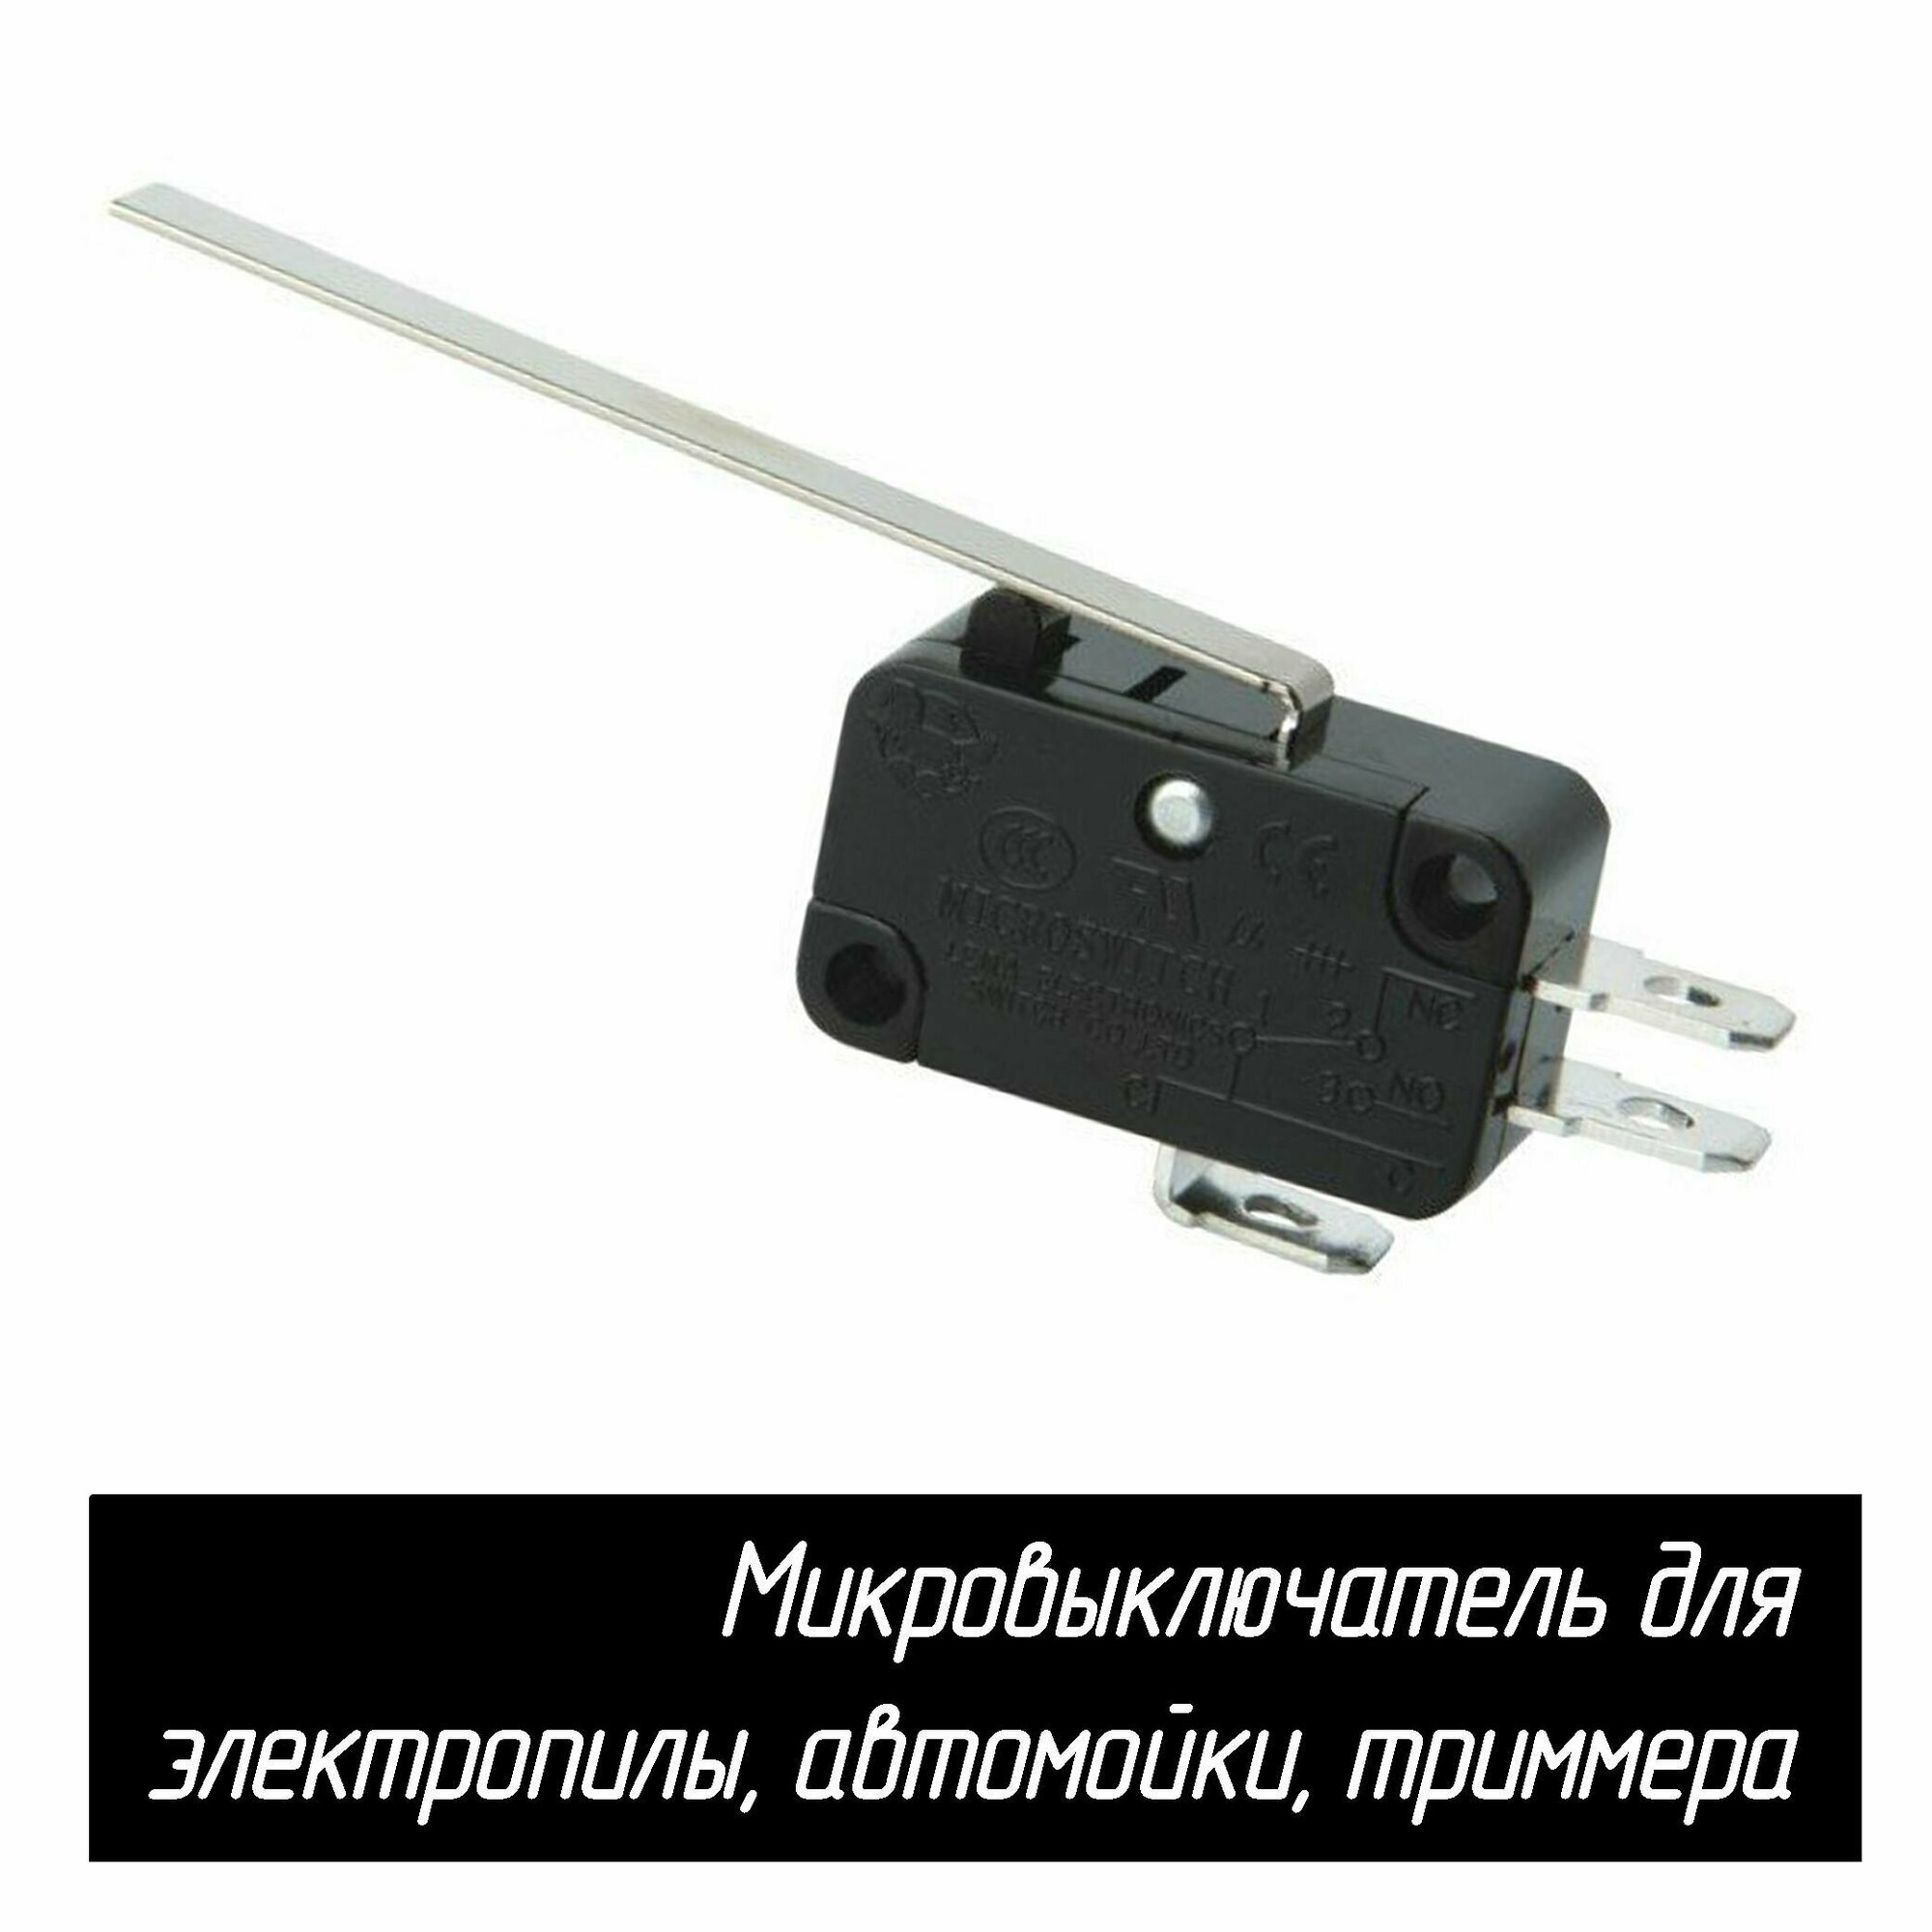 Микровыключатель (кнопка) KW7-0 16A 250VAC для электропилы автомойки триммера (с длинной планкой)